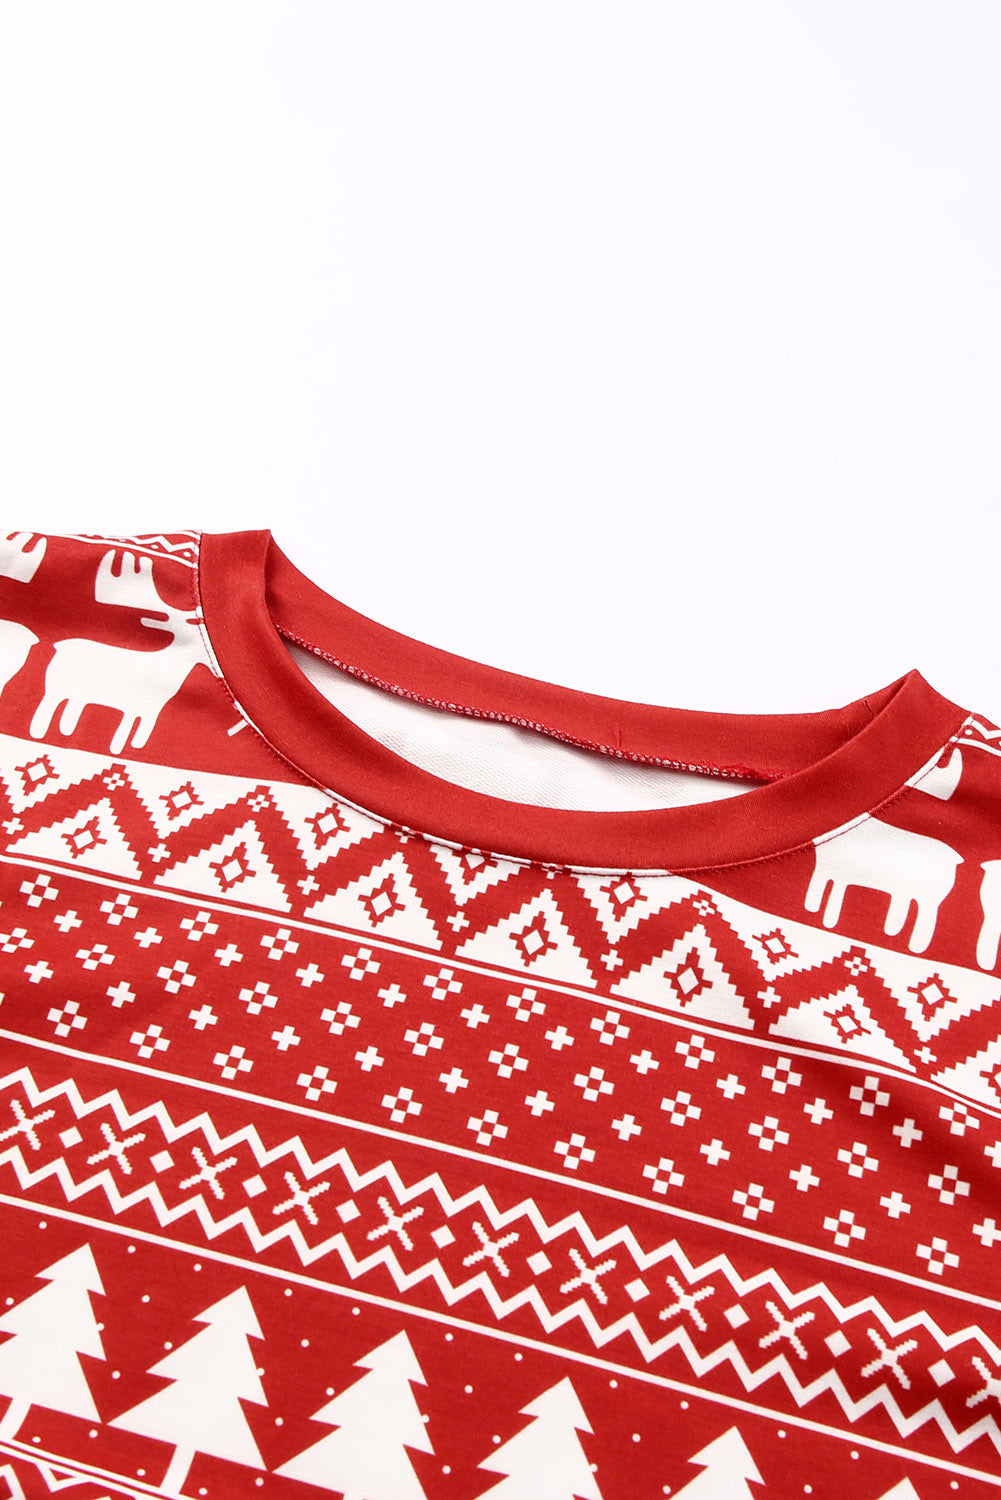 Ognjeno rdeči pulover v obliki severnih jelenčkov božičnega drevesa in salonski komplet hlač